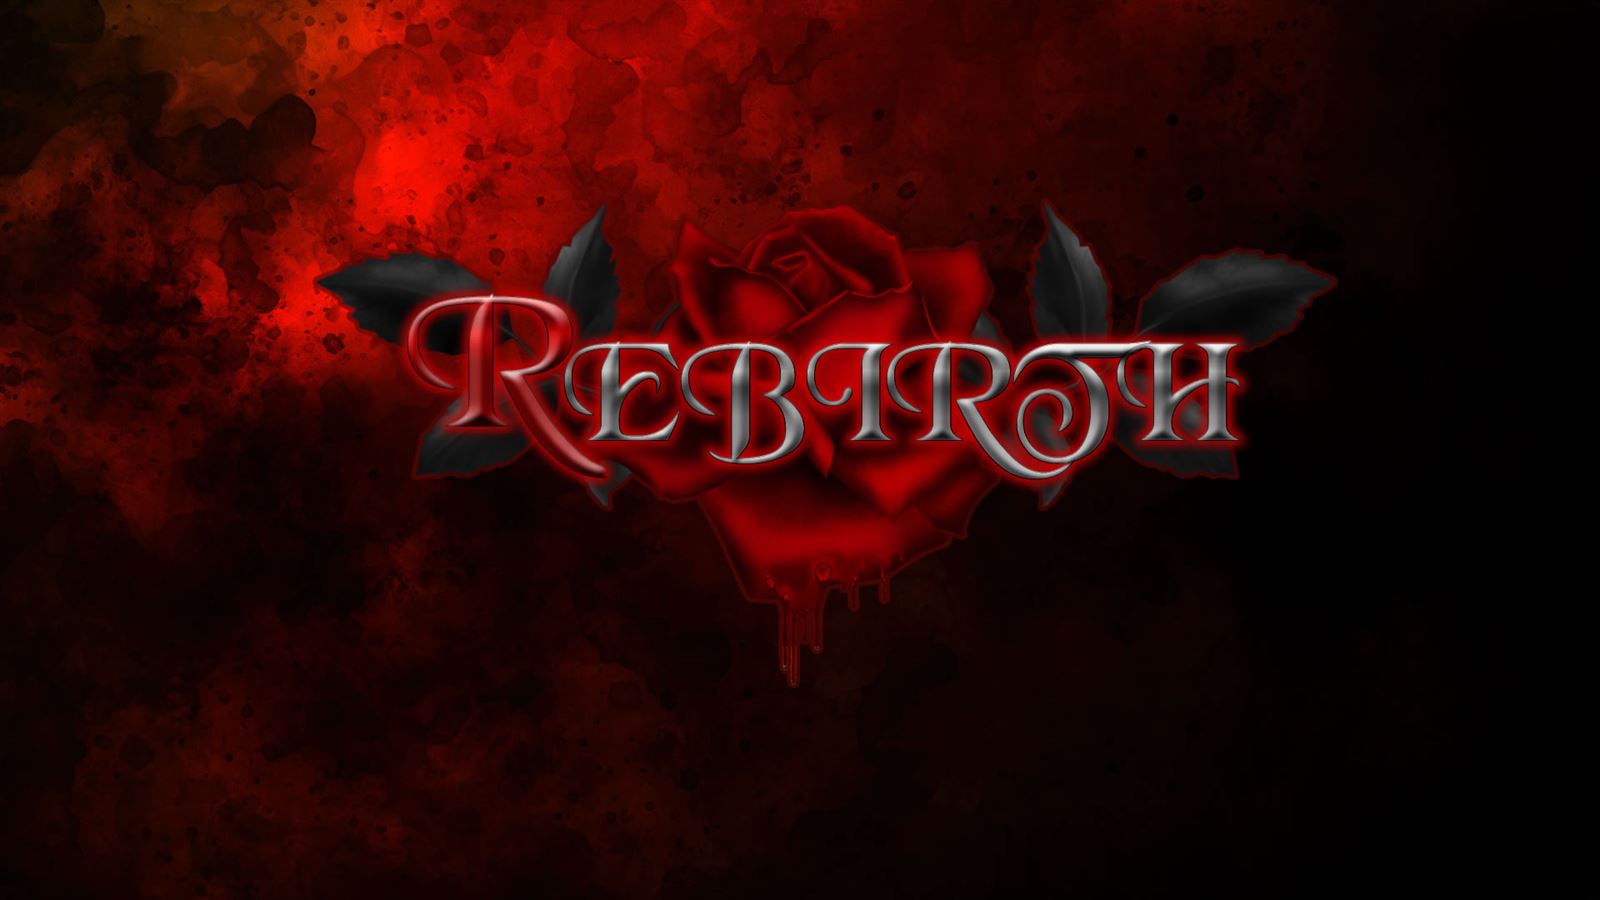 Rebirth porn xxx game download cover